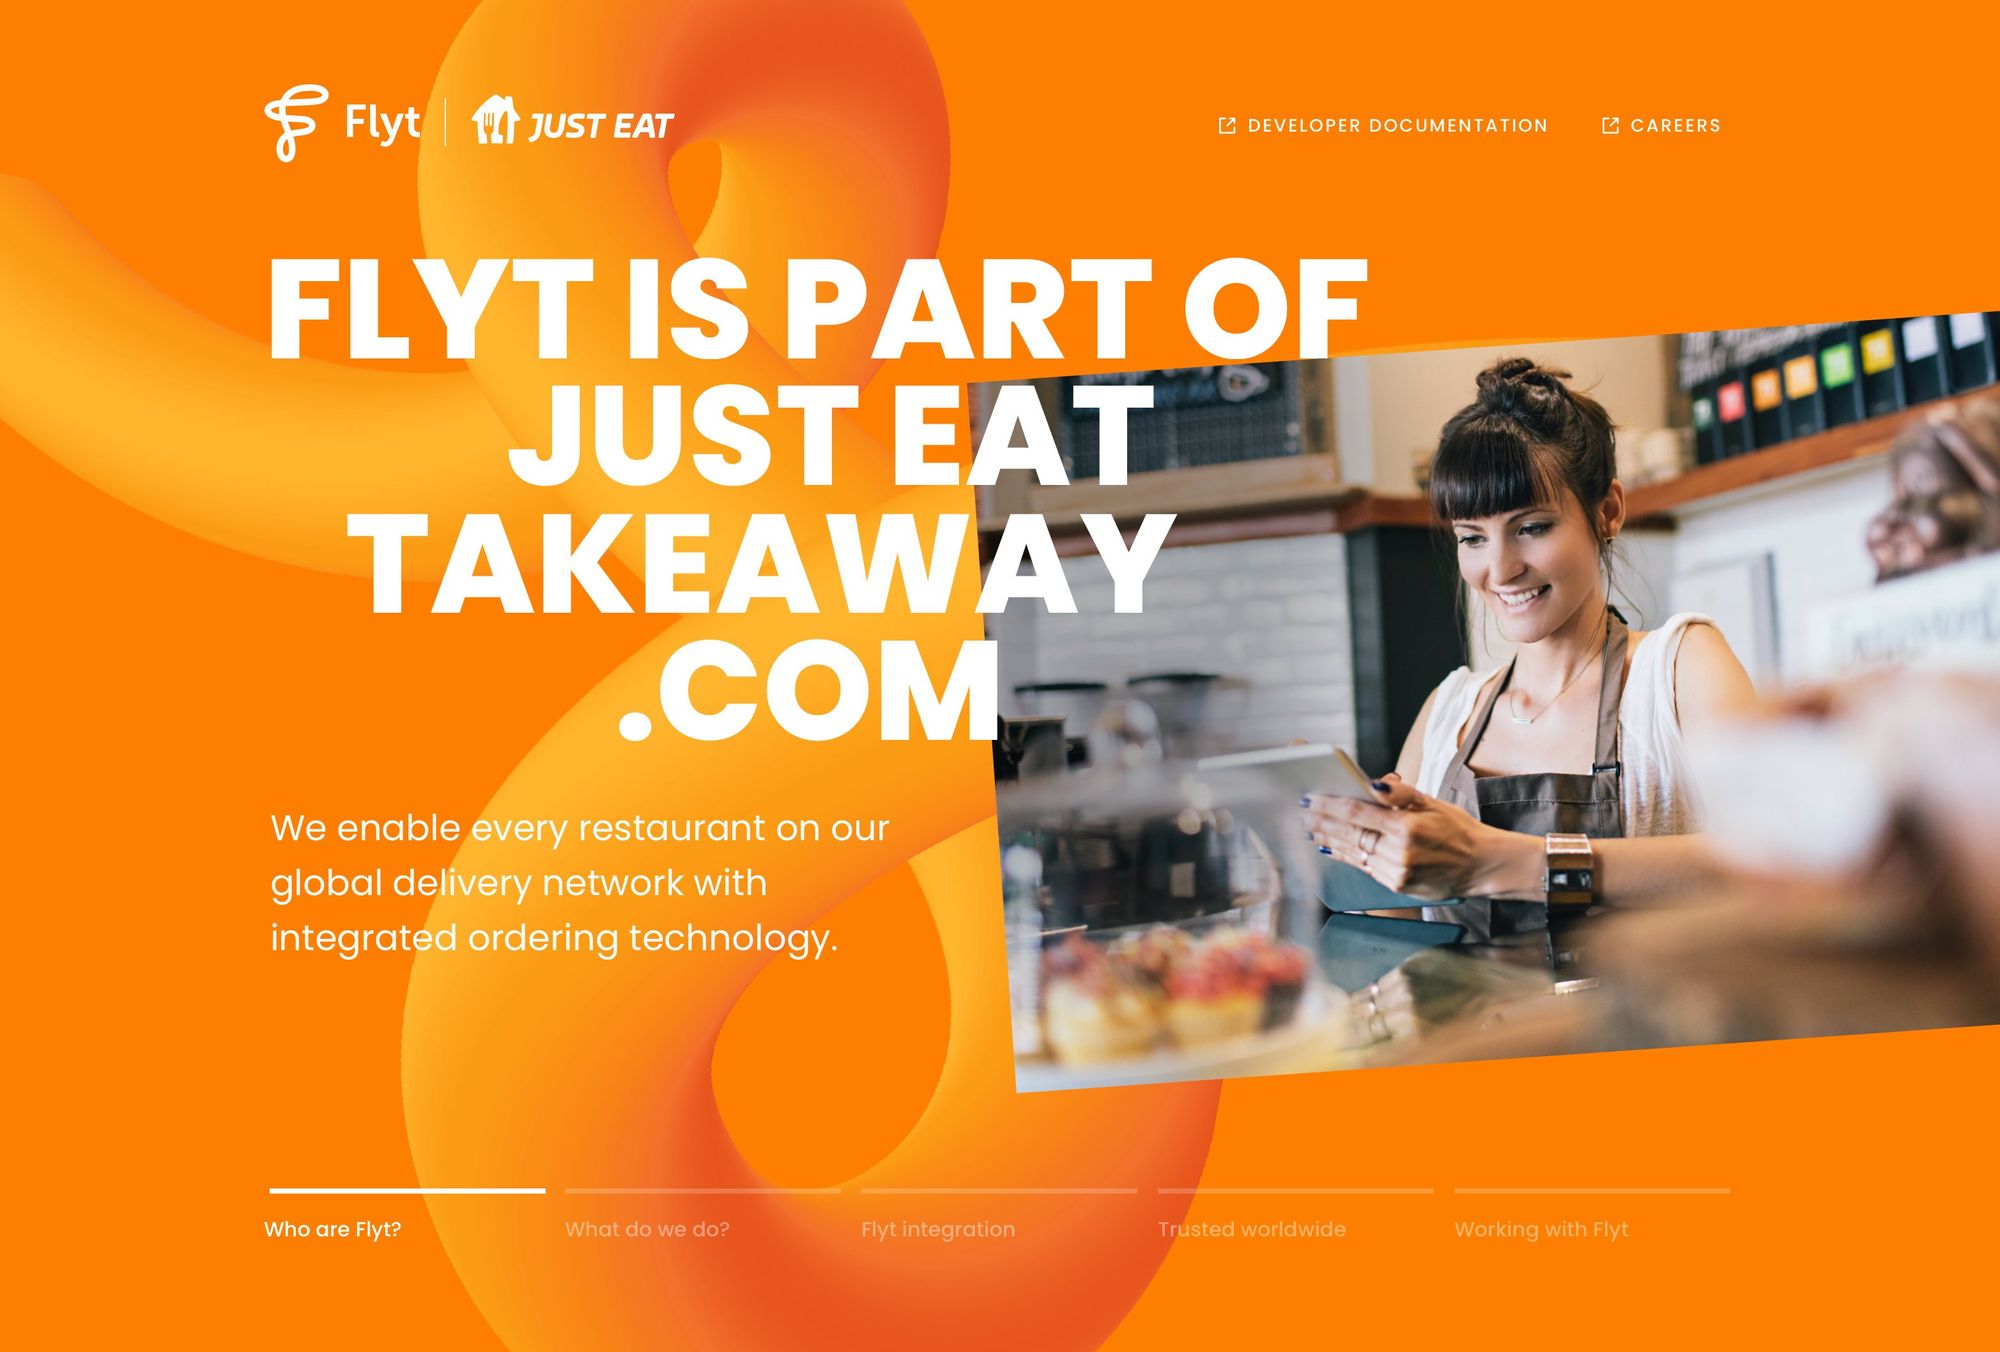 The Flyt (Just Eat) website